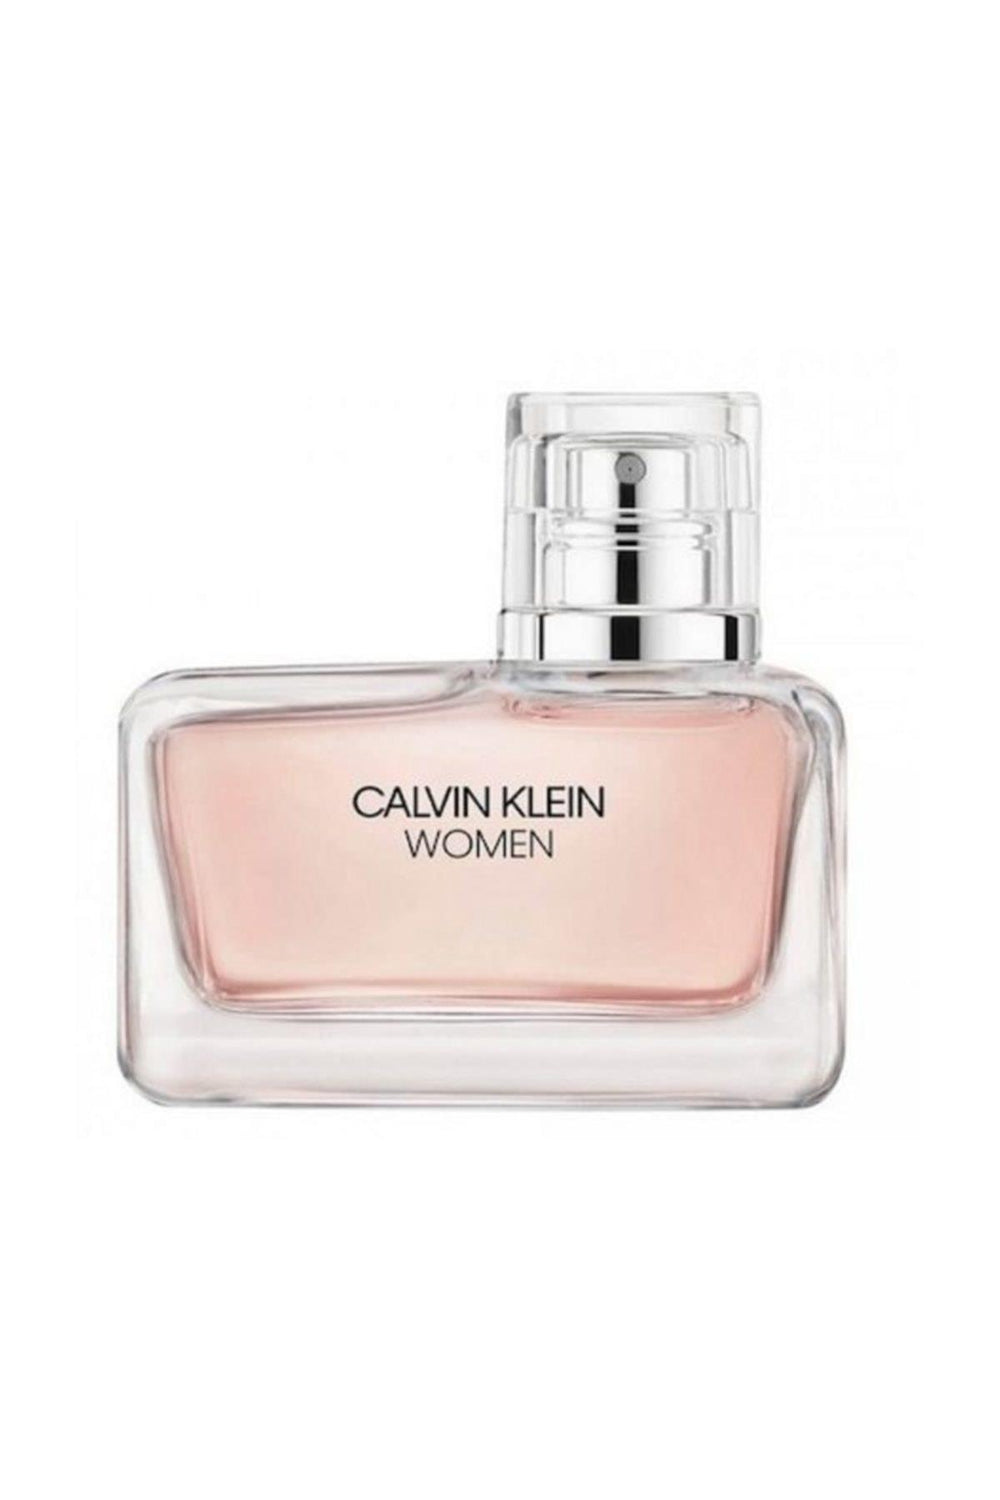 Calvin Klein Women Intense EDP 50 ml Kadın Parfümü